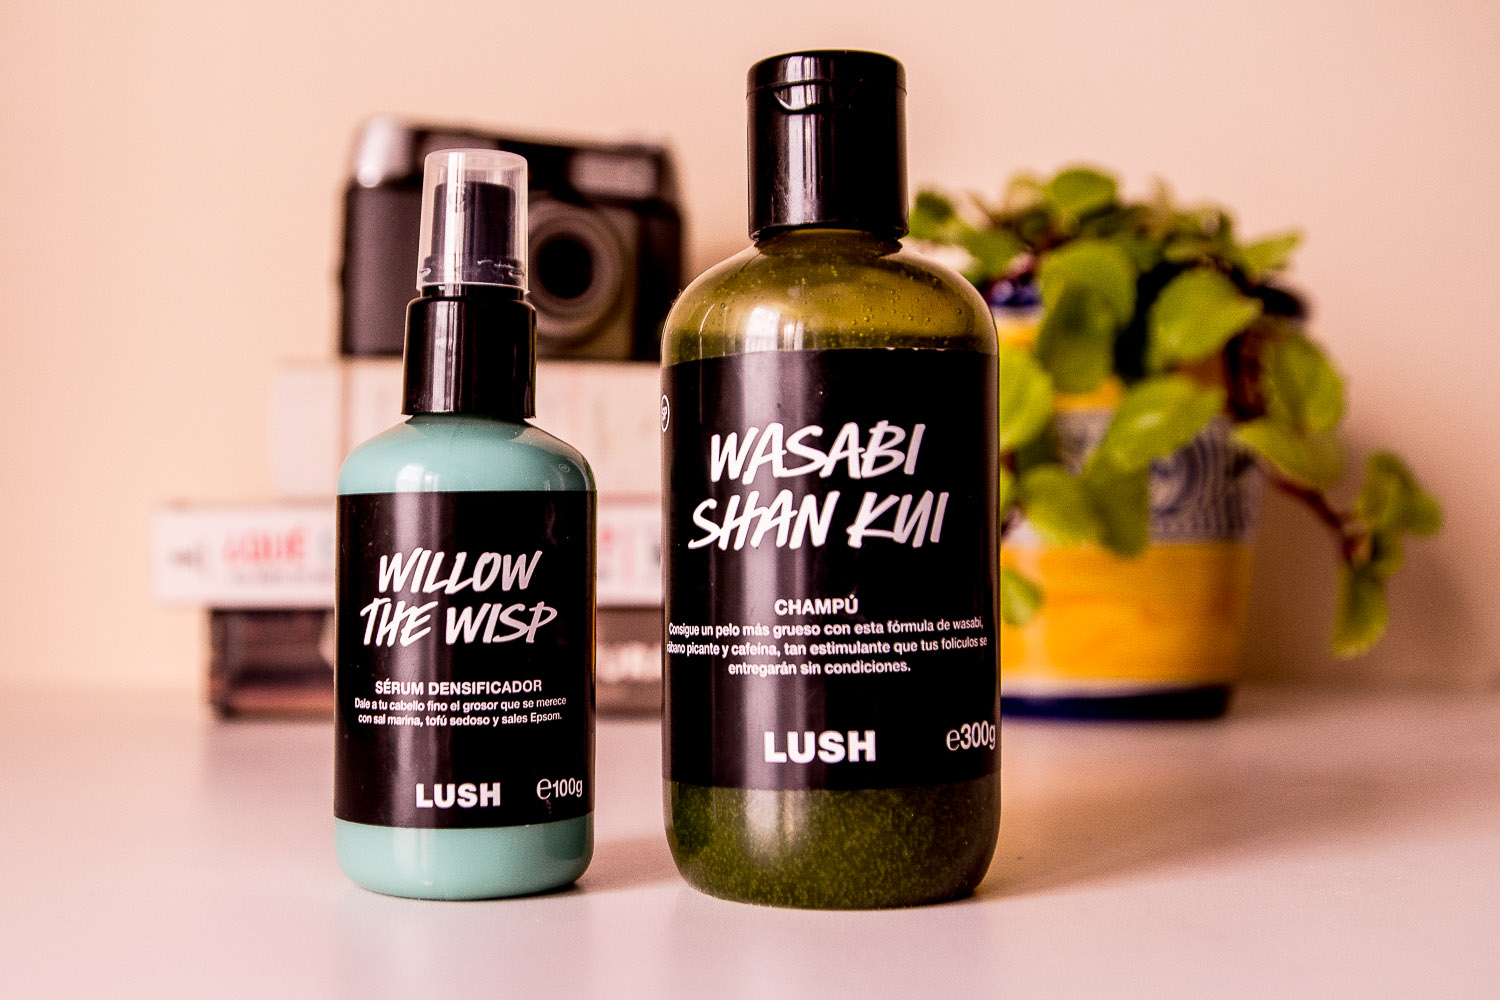 My Cosmetic Mi experiencia con Lush Labs. Última actualización: octubre de 2019.